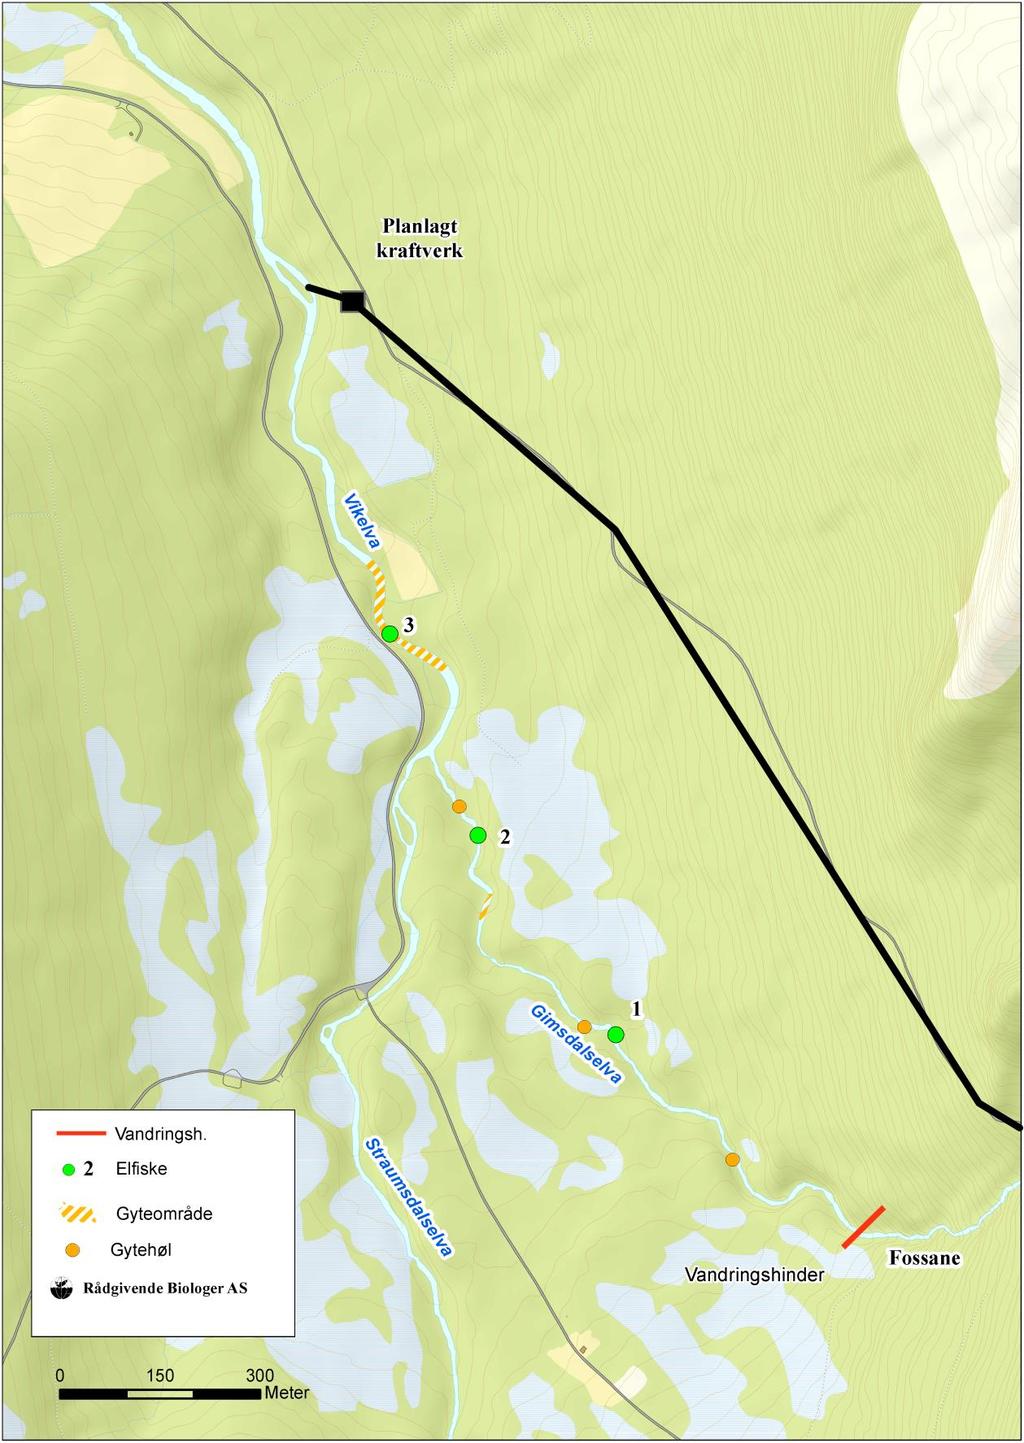 Figur 1. Gimsdalselva og øvre del av Vikeelva, med planlagt kraftstasjon. Anadromt vandringshinder i Gimsdalselva er markert.